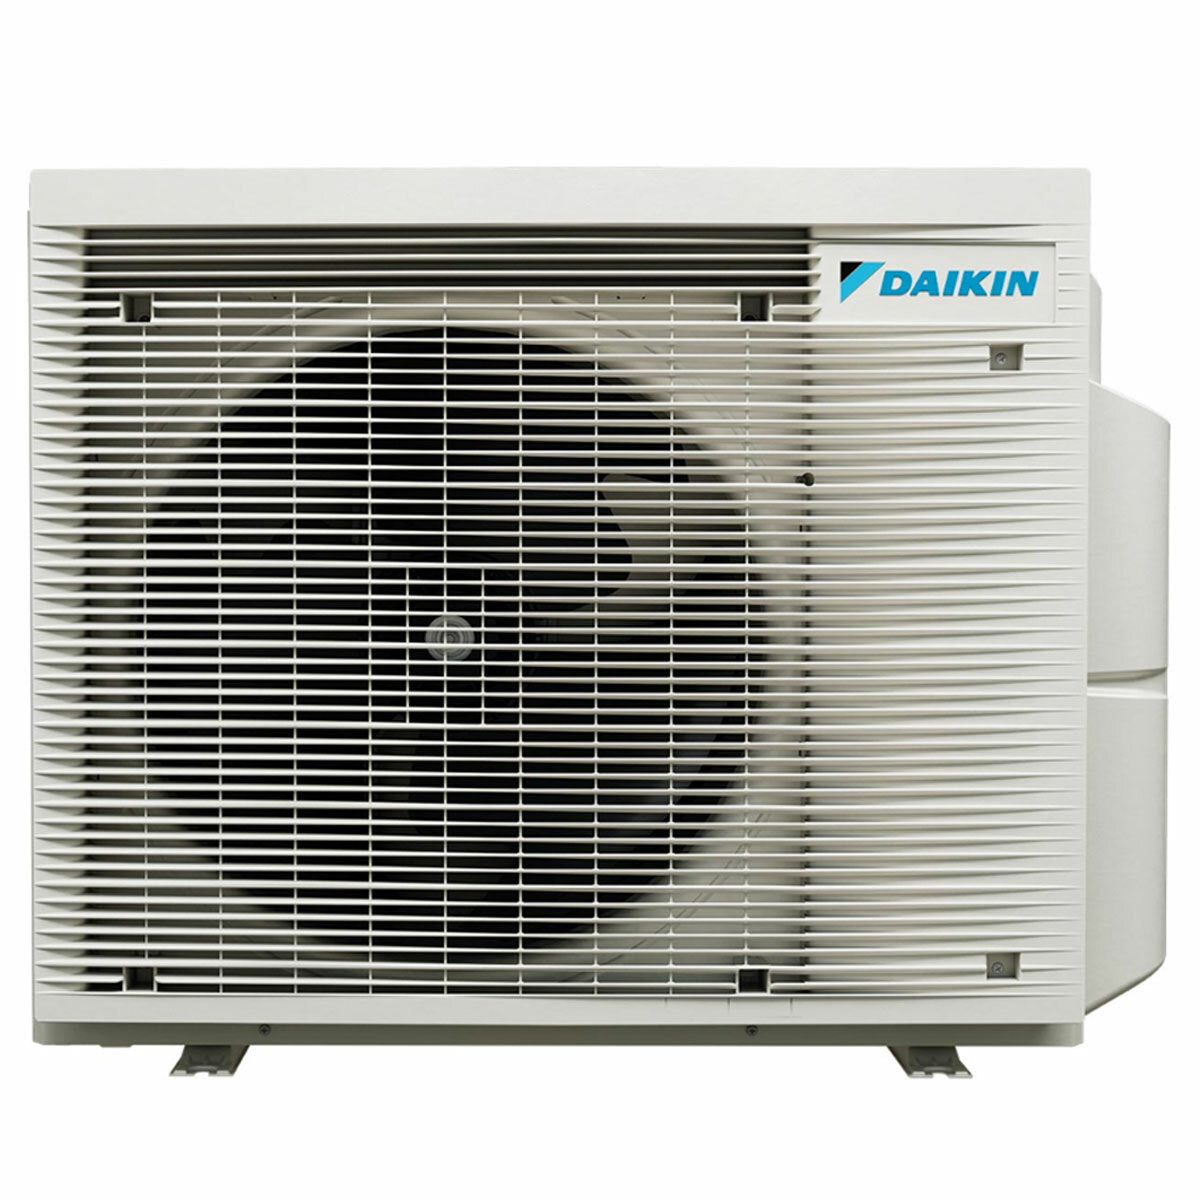 Daikin Emura 3 trial split air conditioner 9000+12000+18000 BTU inverter A+ wifi outdoor unit 7.8 kW Silver